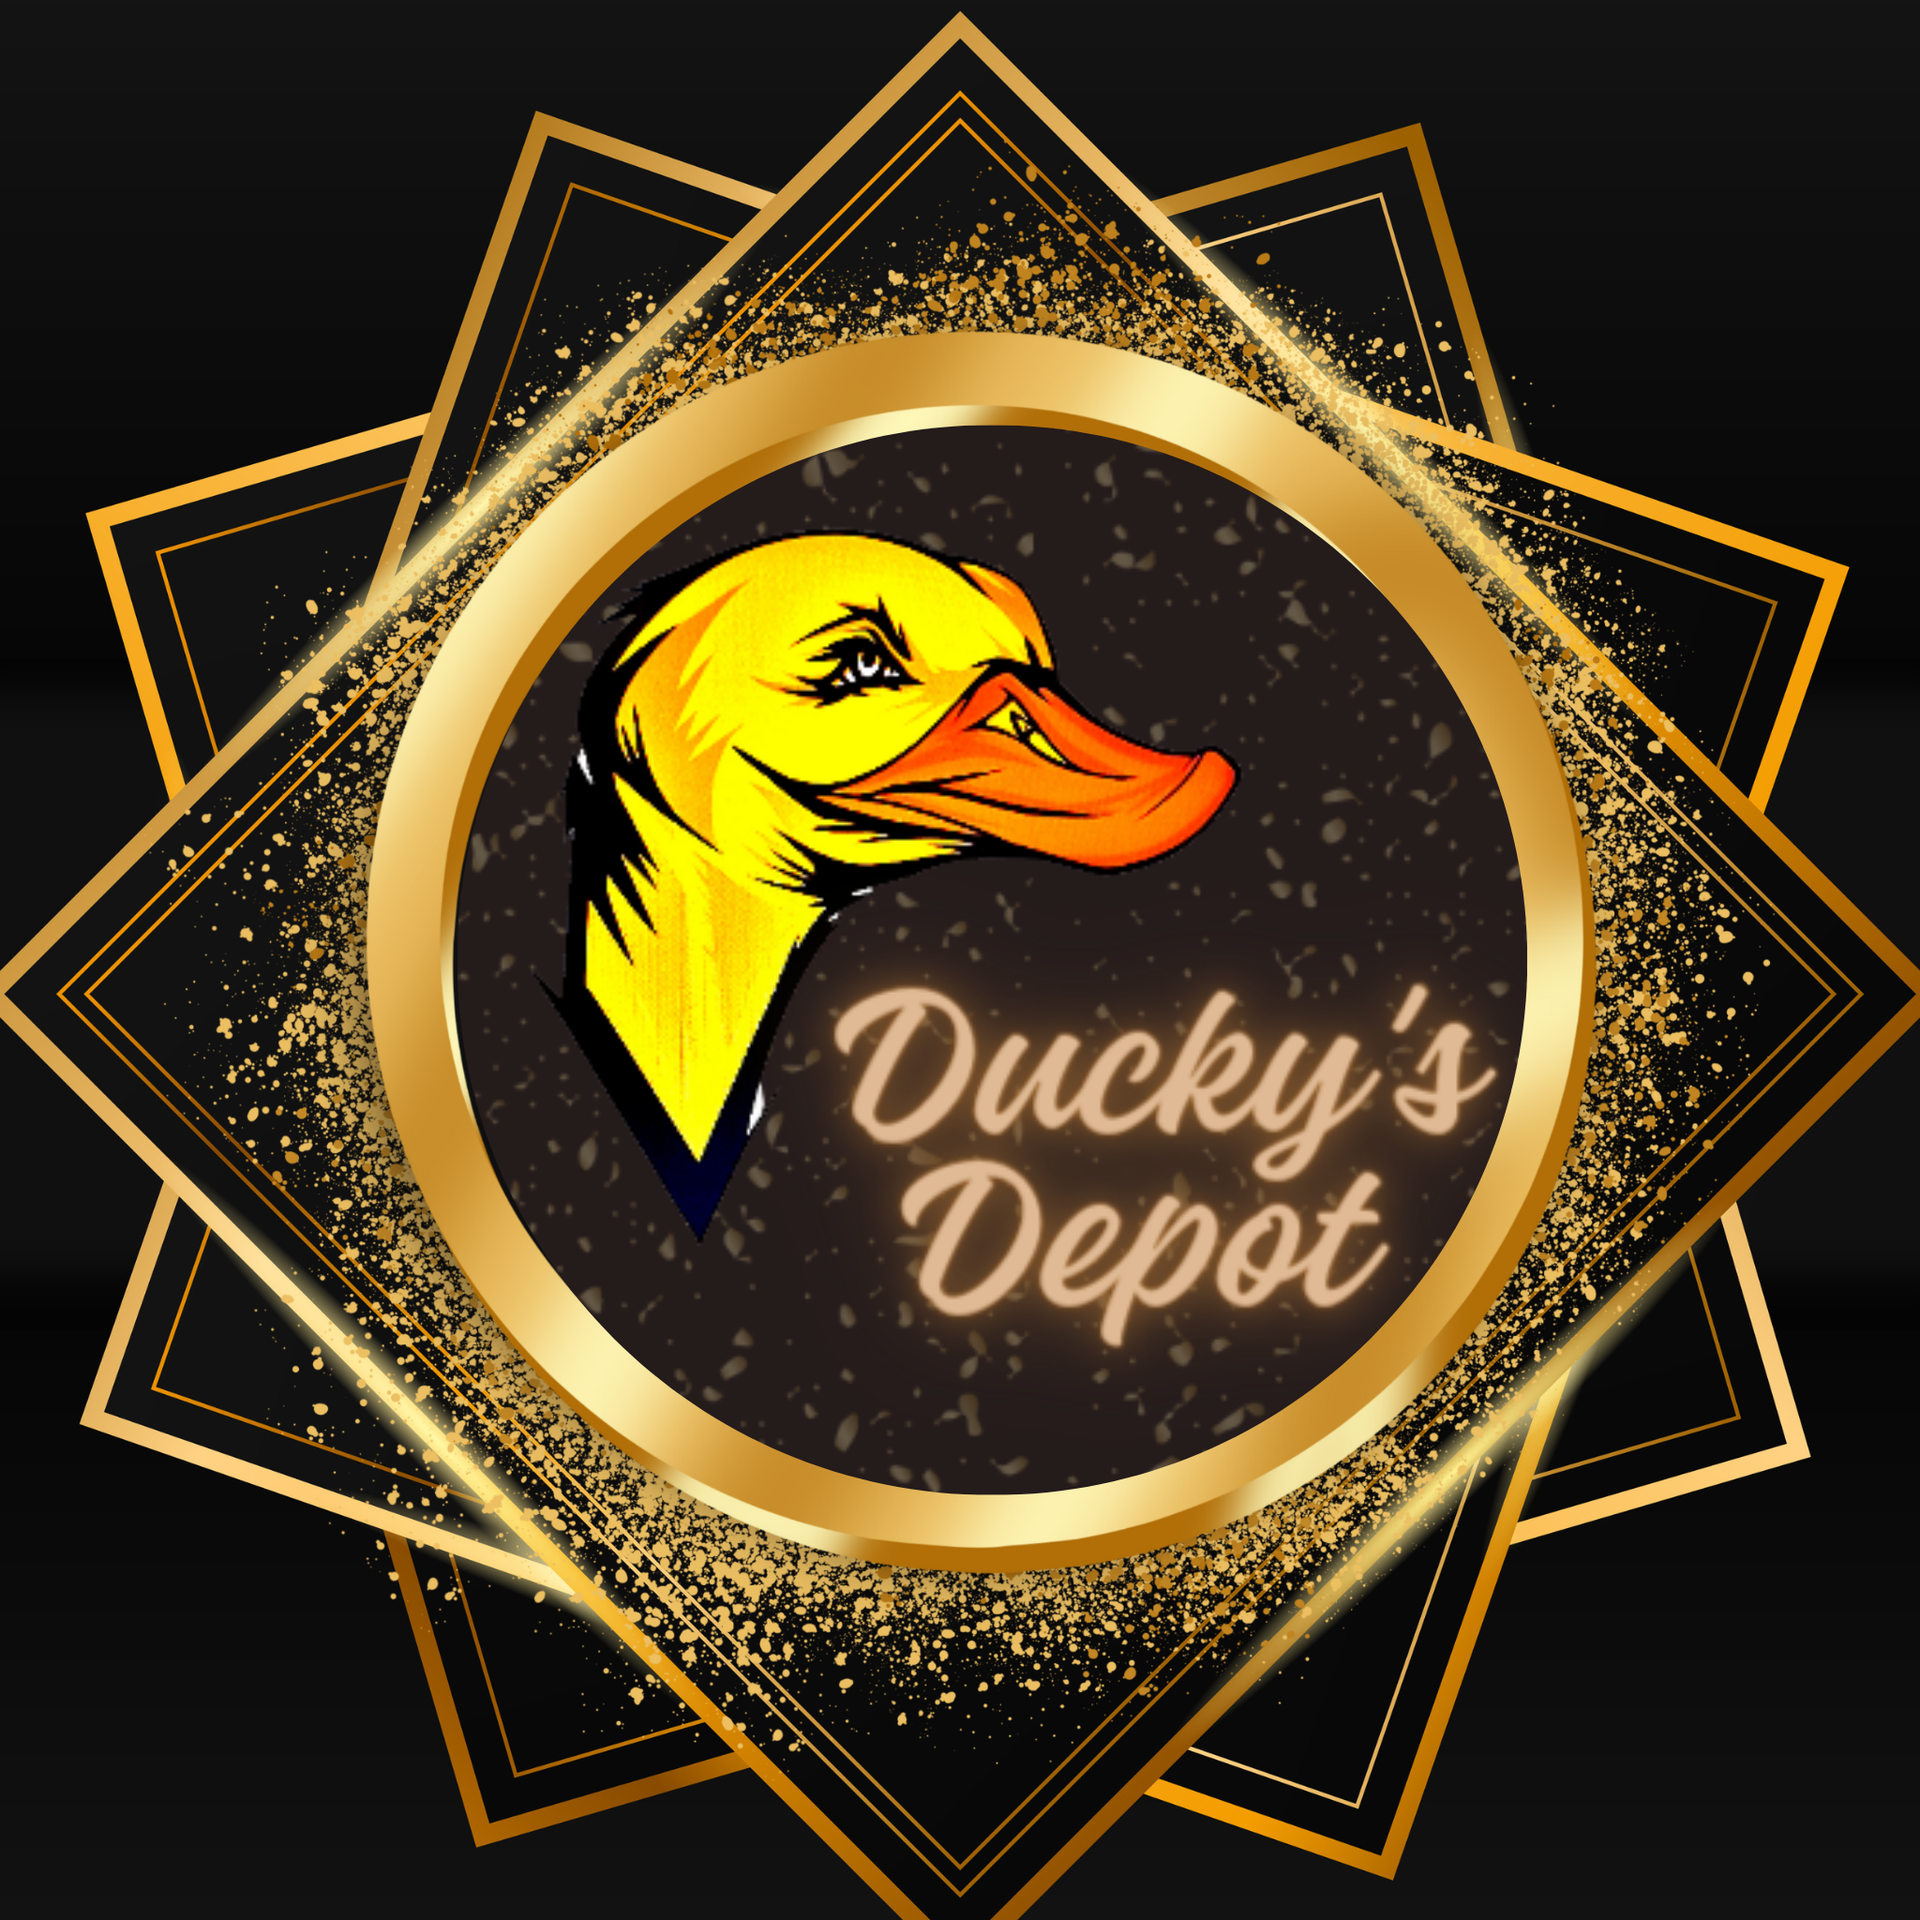 Ducky's Depot